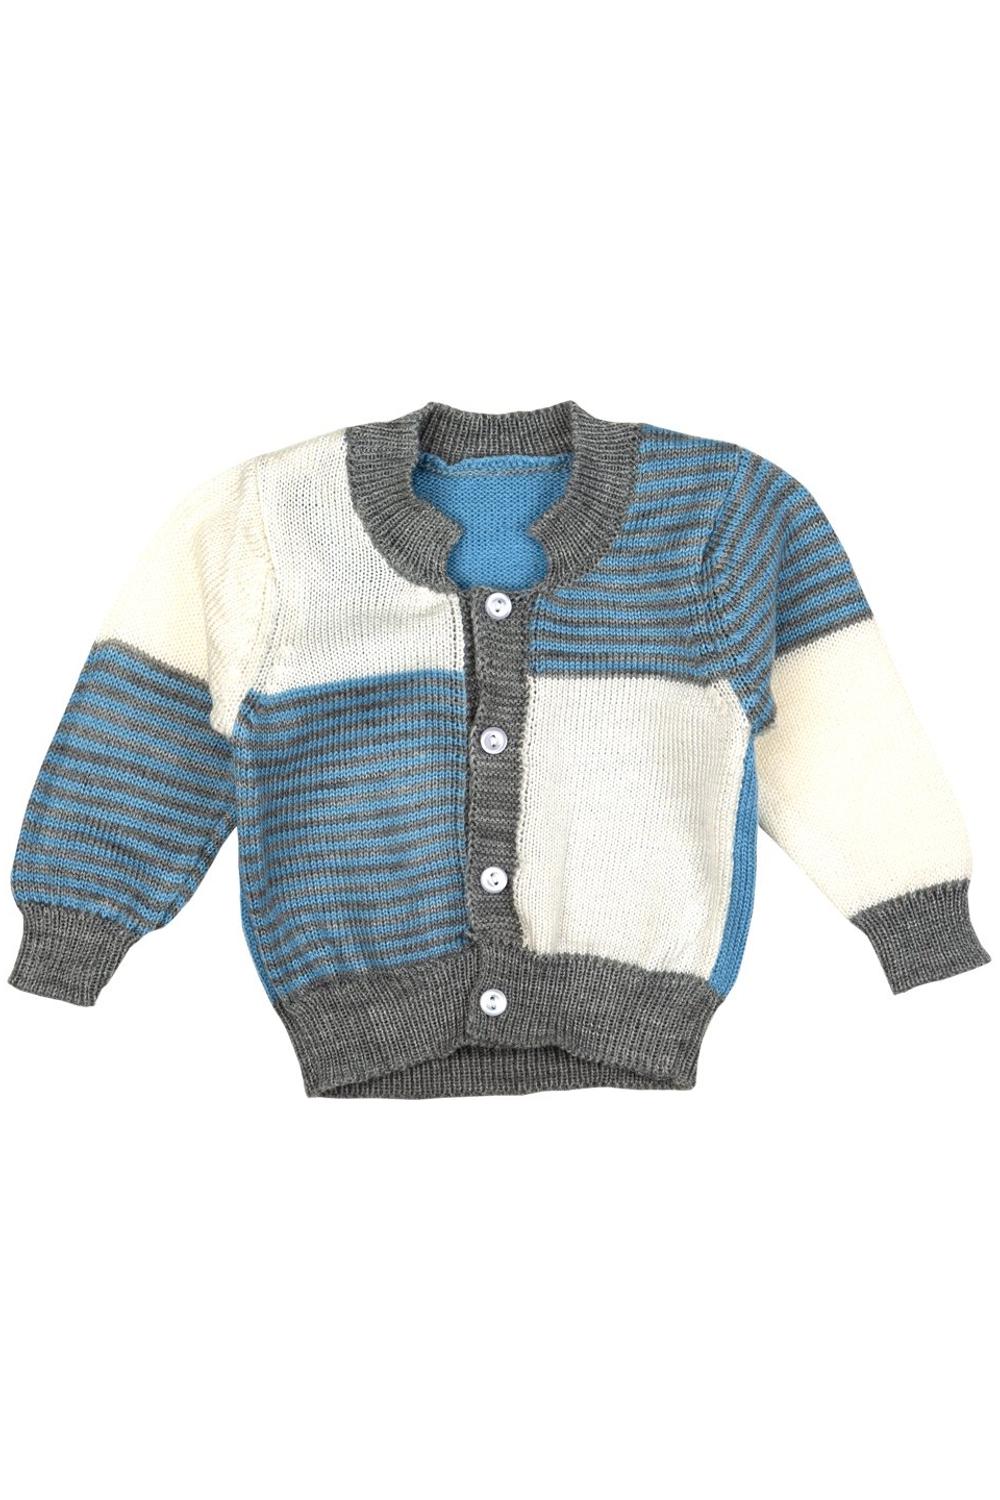 Mee Mee Unisex Full sleeve Sweater Set- Blue